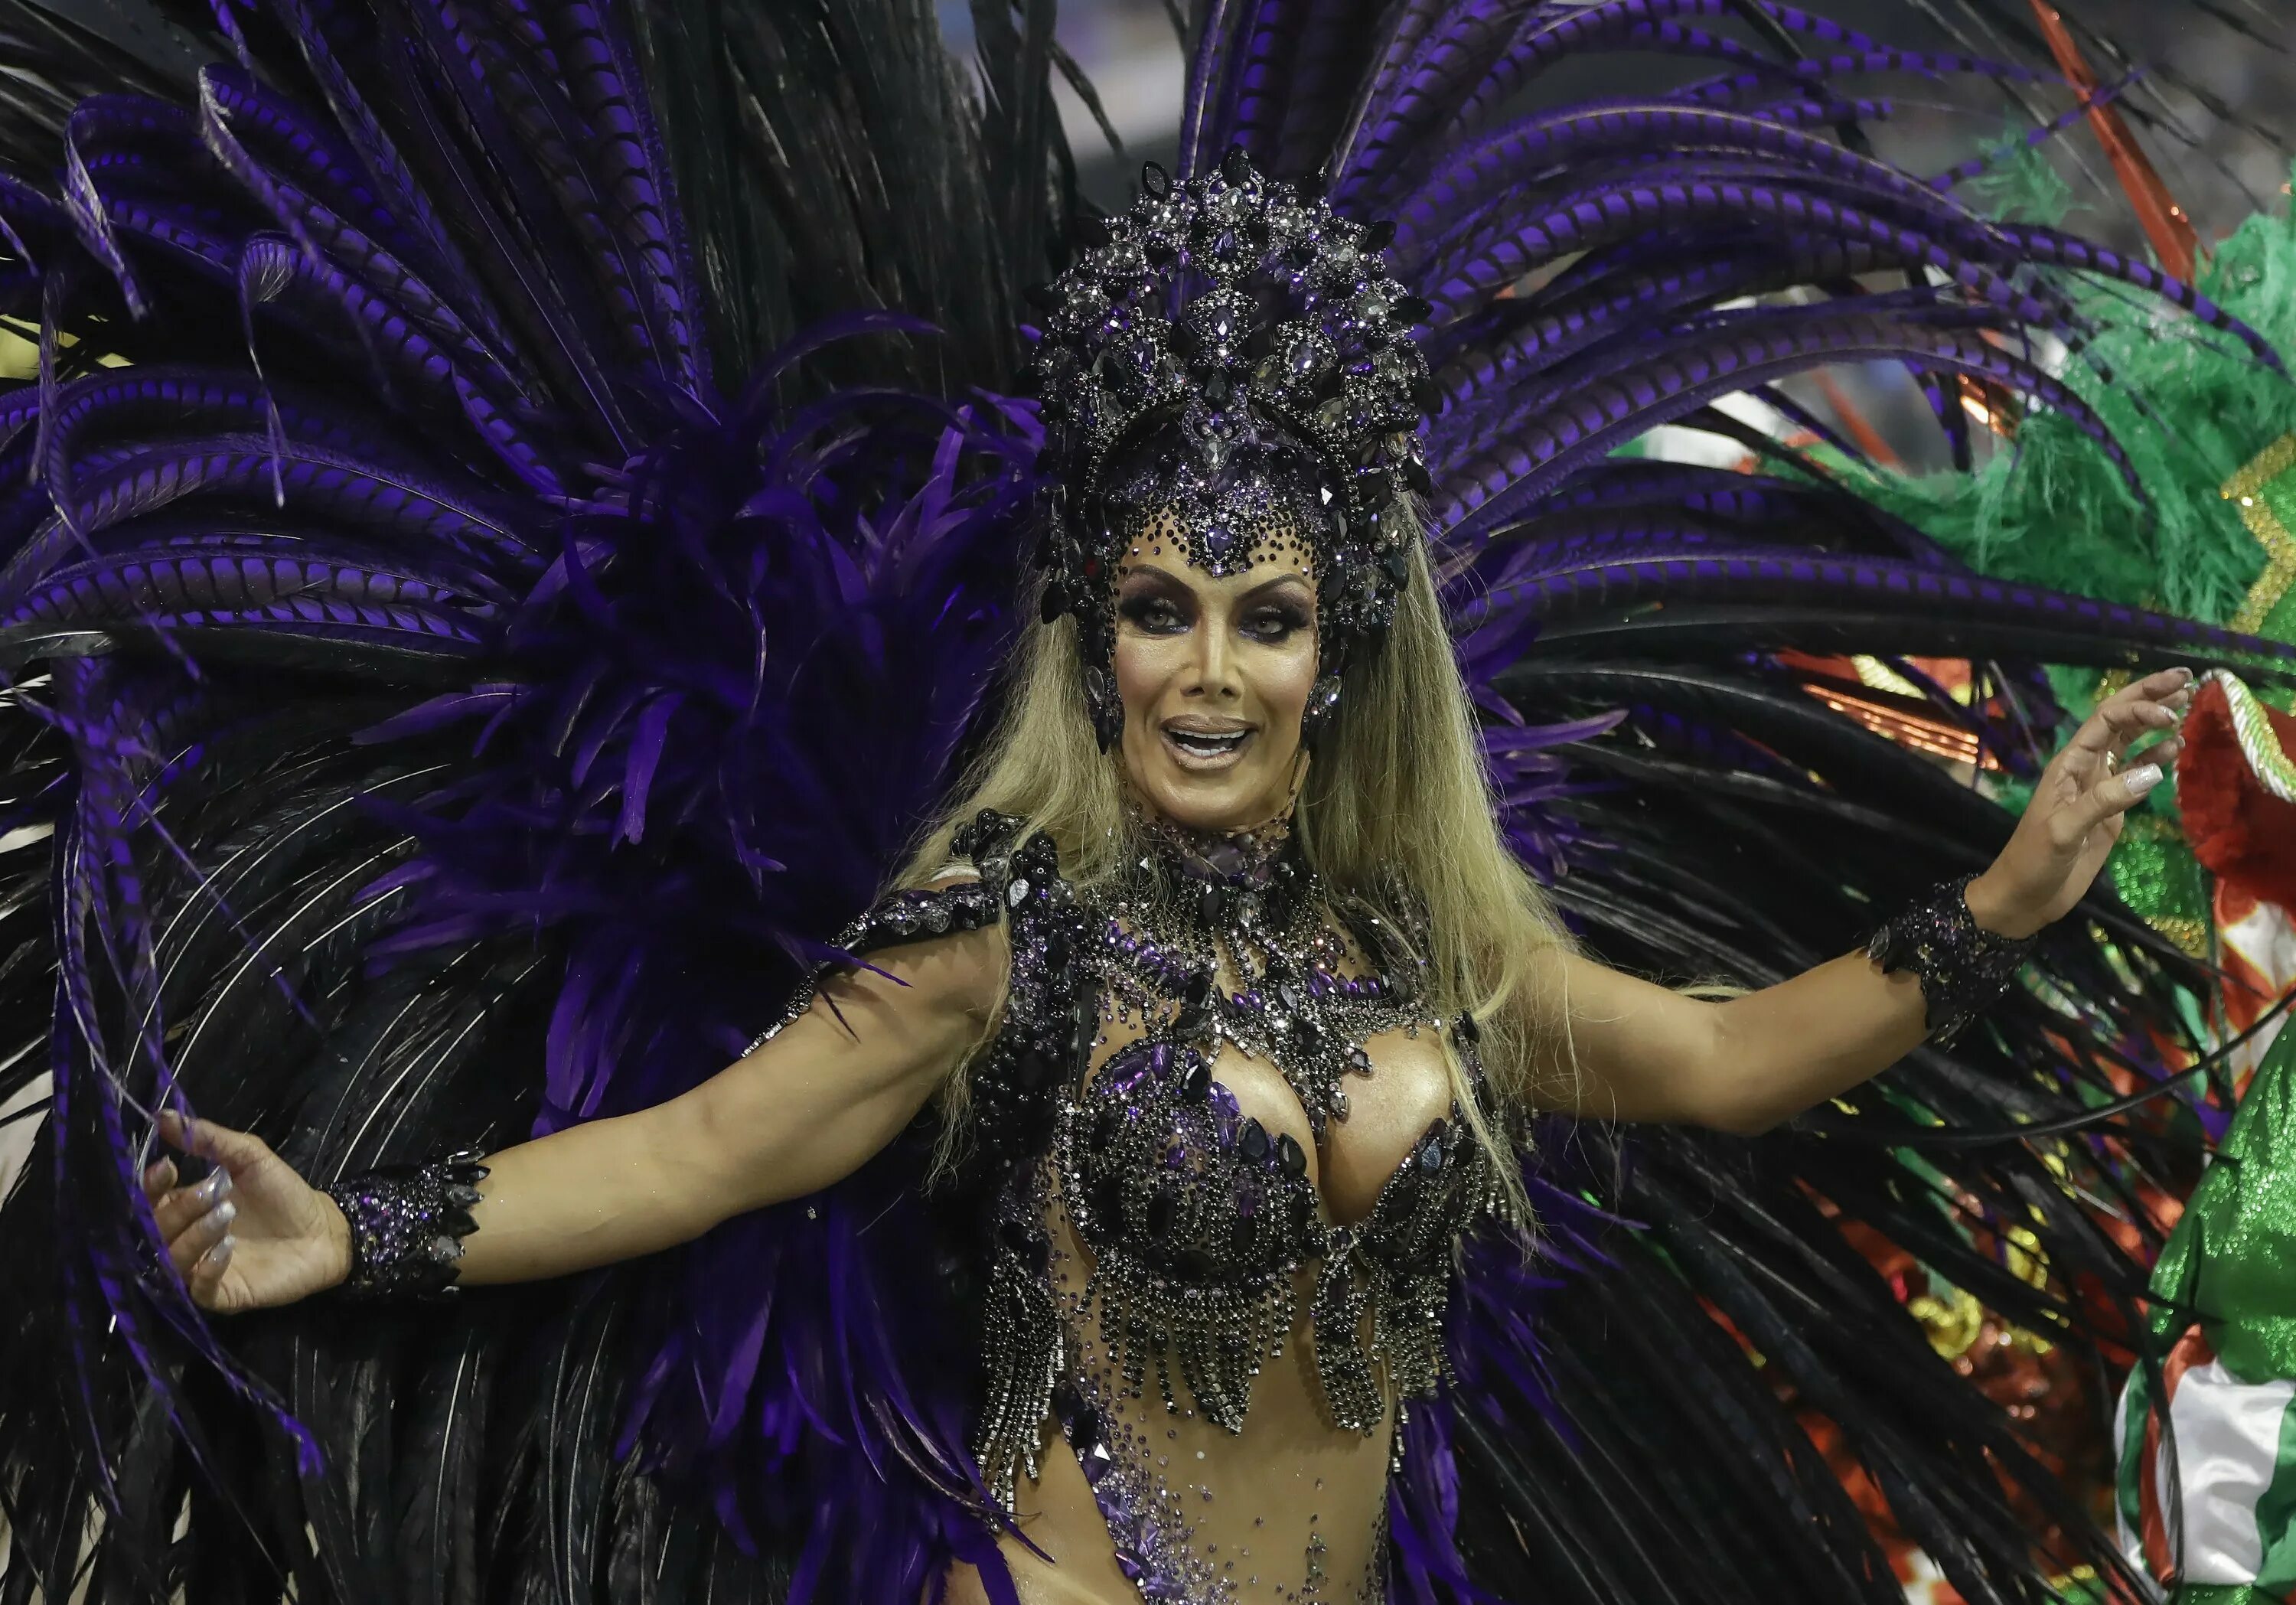 Rio 18. Рио де Жанейро карнавал женщины. Бразилия карнавал женщины Бразилия карнавал женщины. Карнавал бразильский карнавал. Бразильская танцовщица Андреа Мартинс.